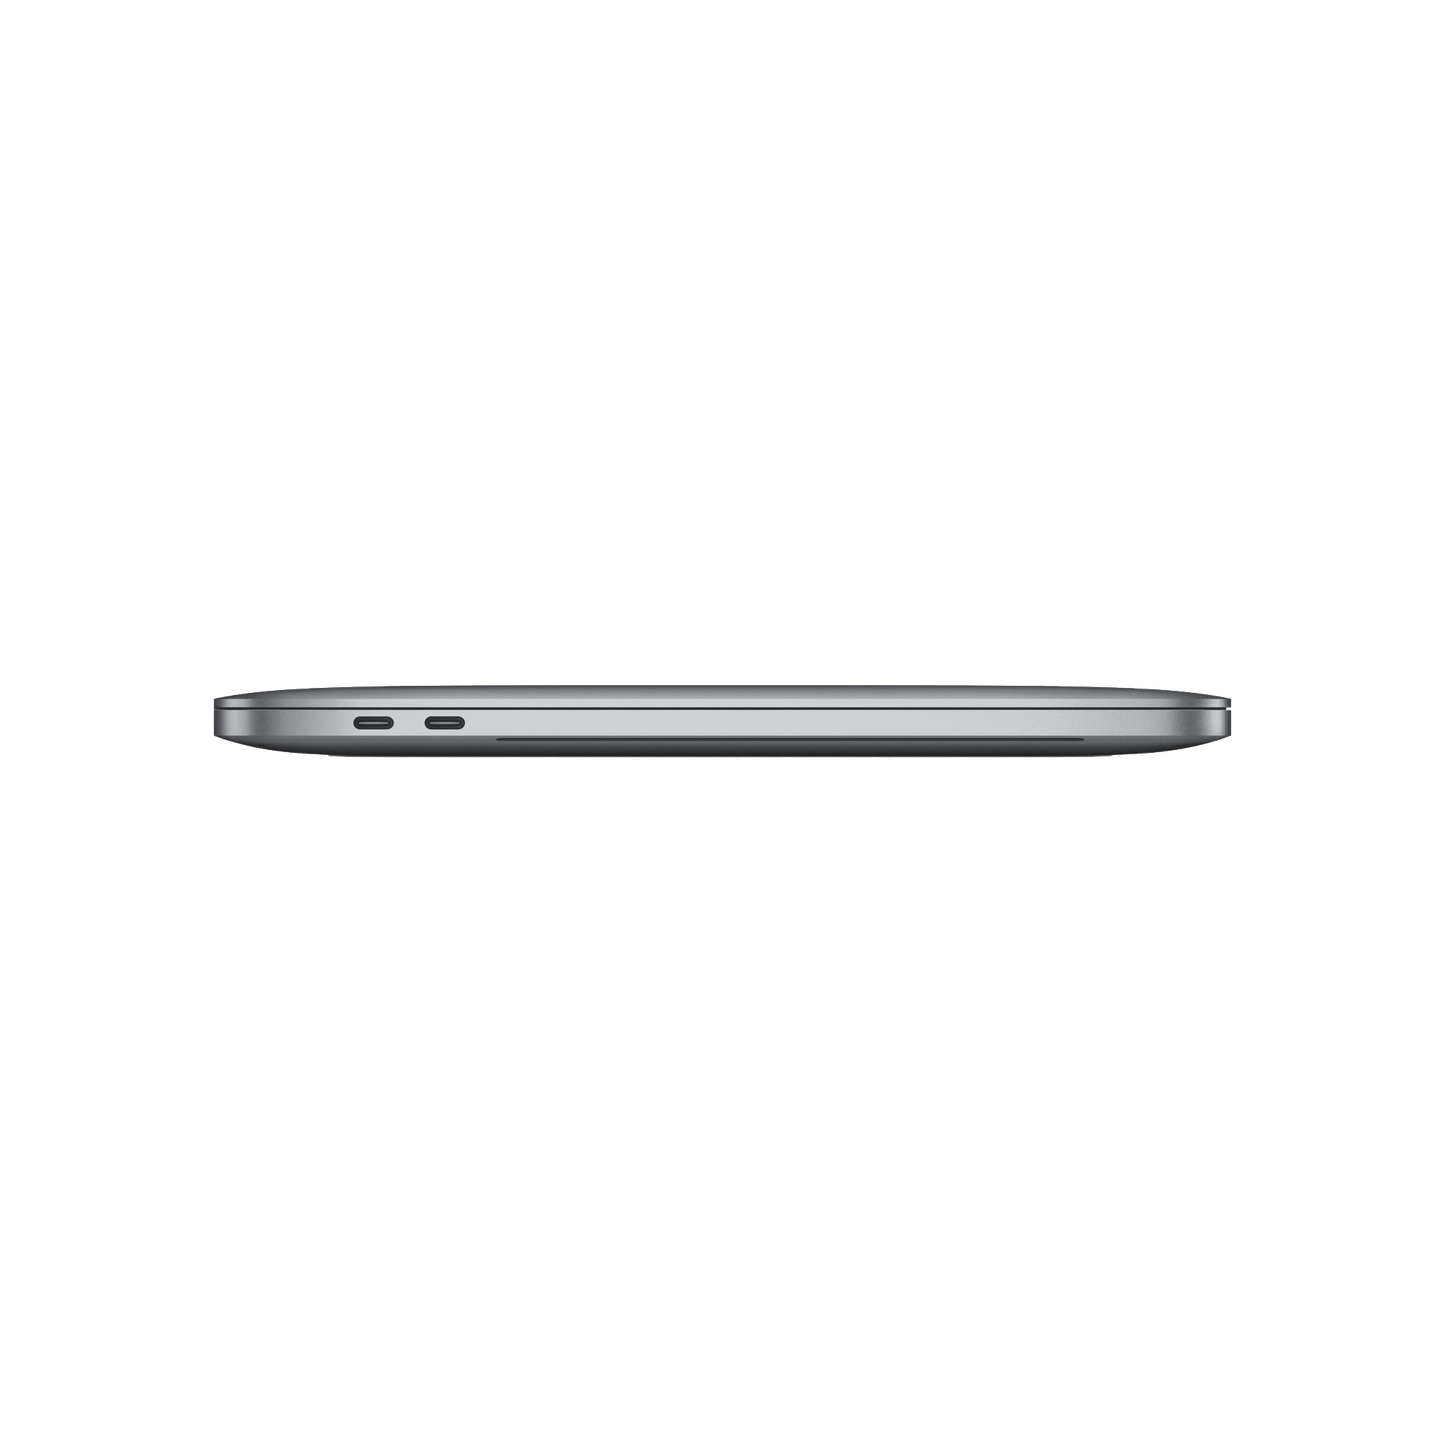 Refurbished MacBook Pro Touchbar 13" i5 2.3 8gb 256gb - test-product-media-liquid1